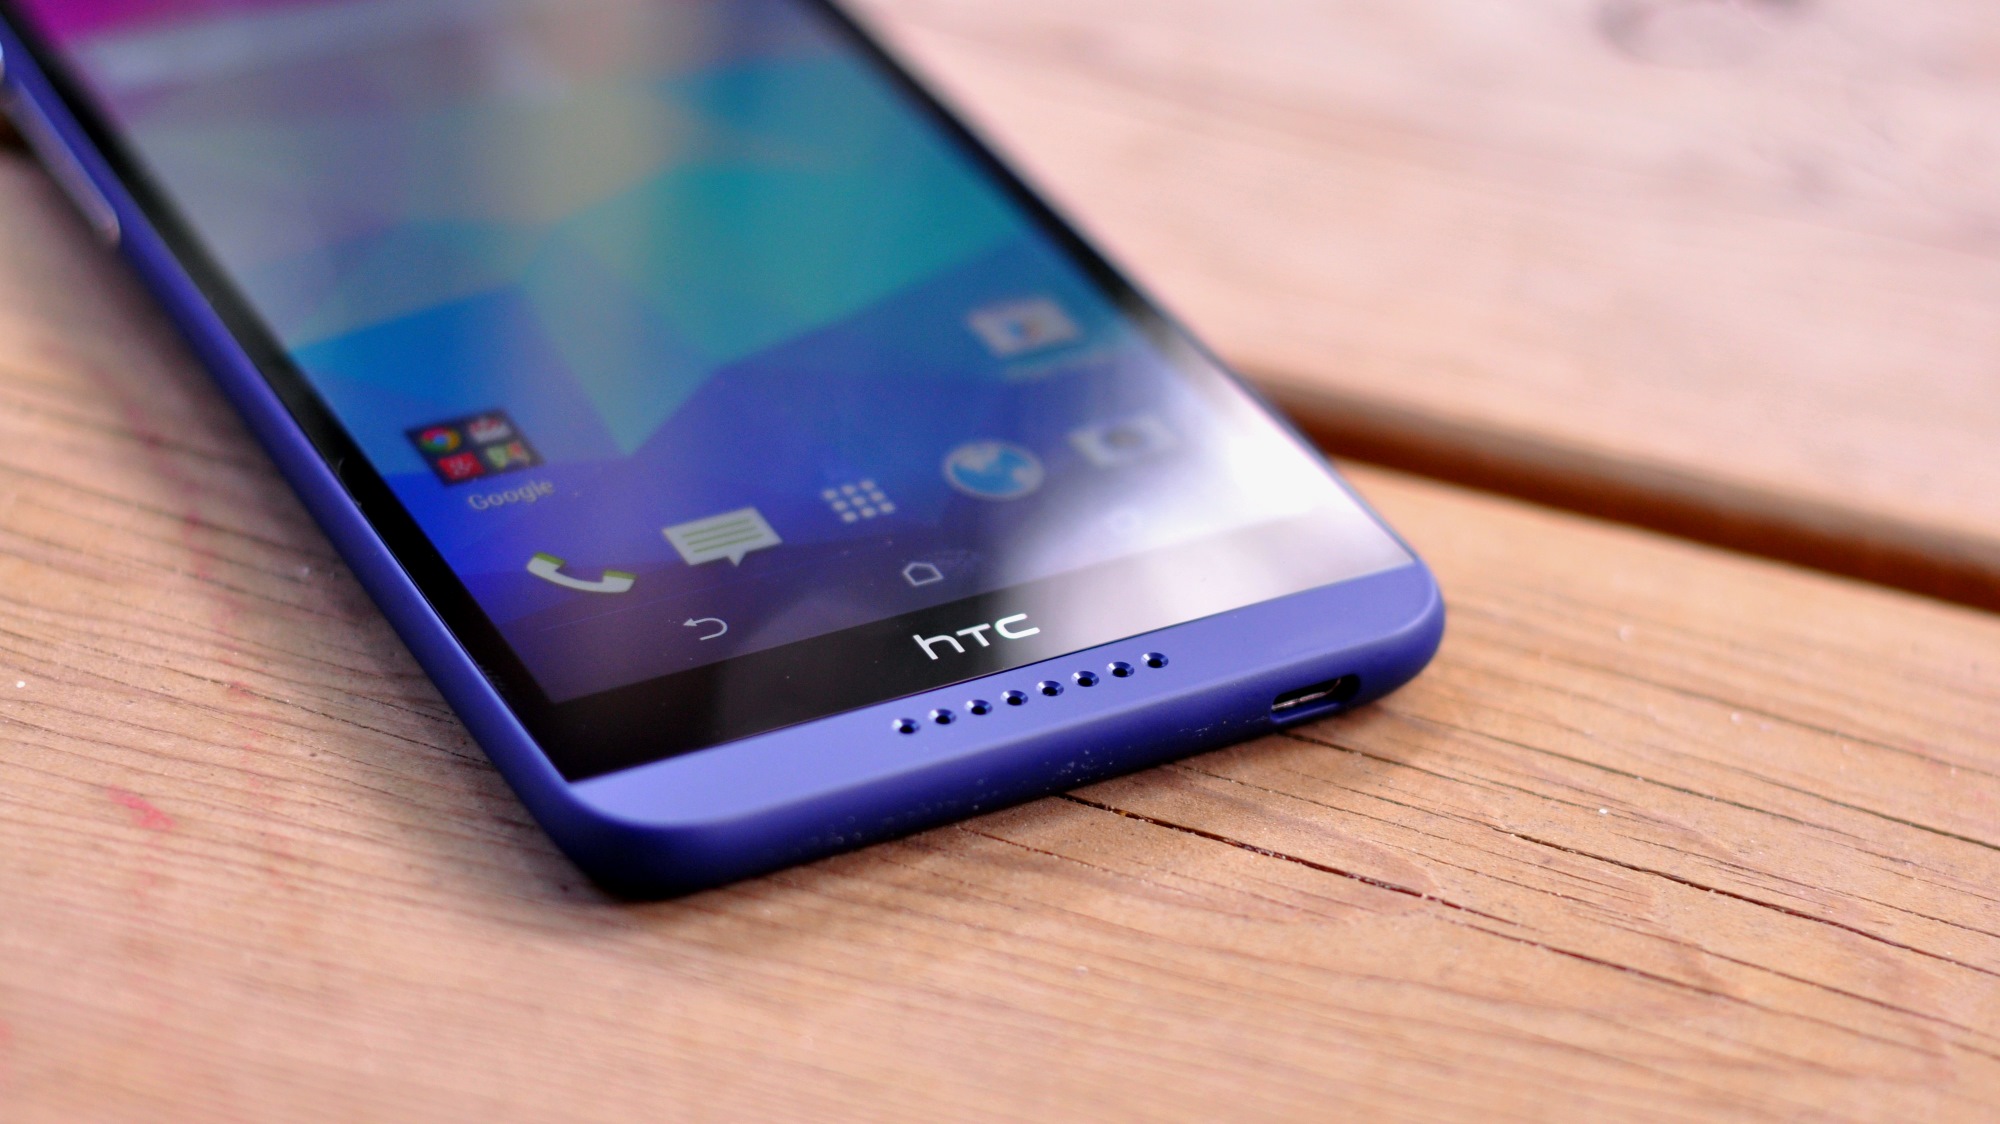 #Відео: Рекламний ролик нового флагмана HTC з'явився у Мережі до офіційного анонсу